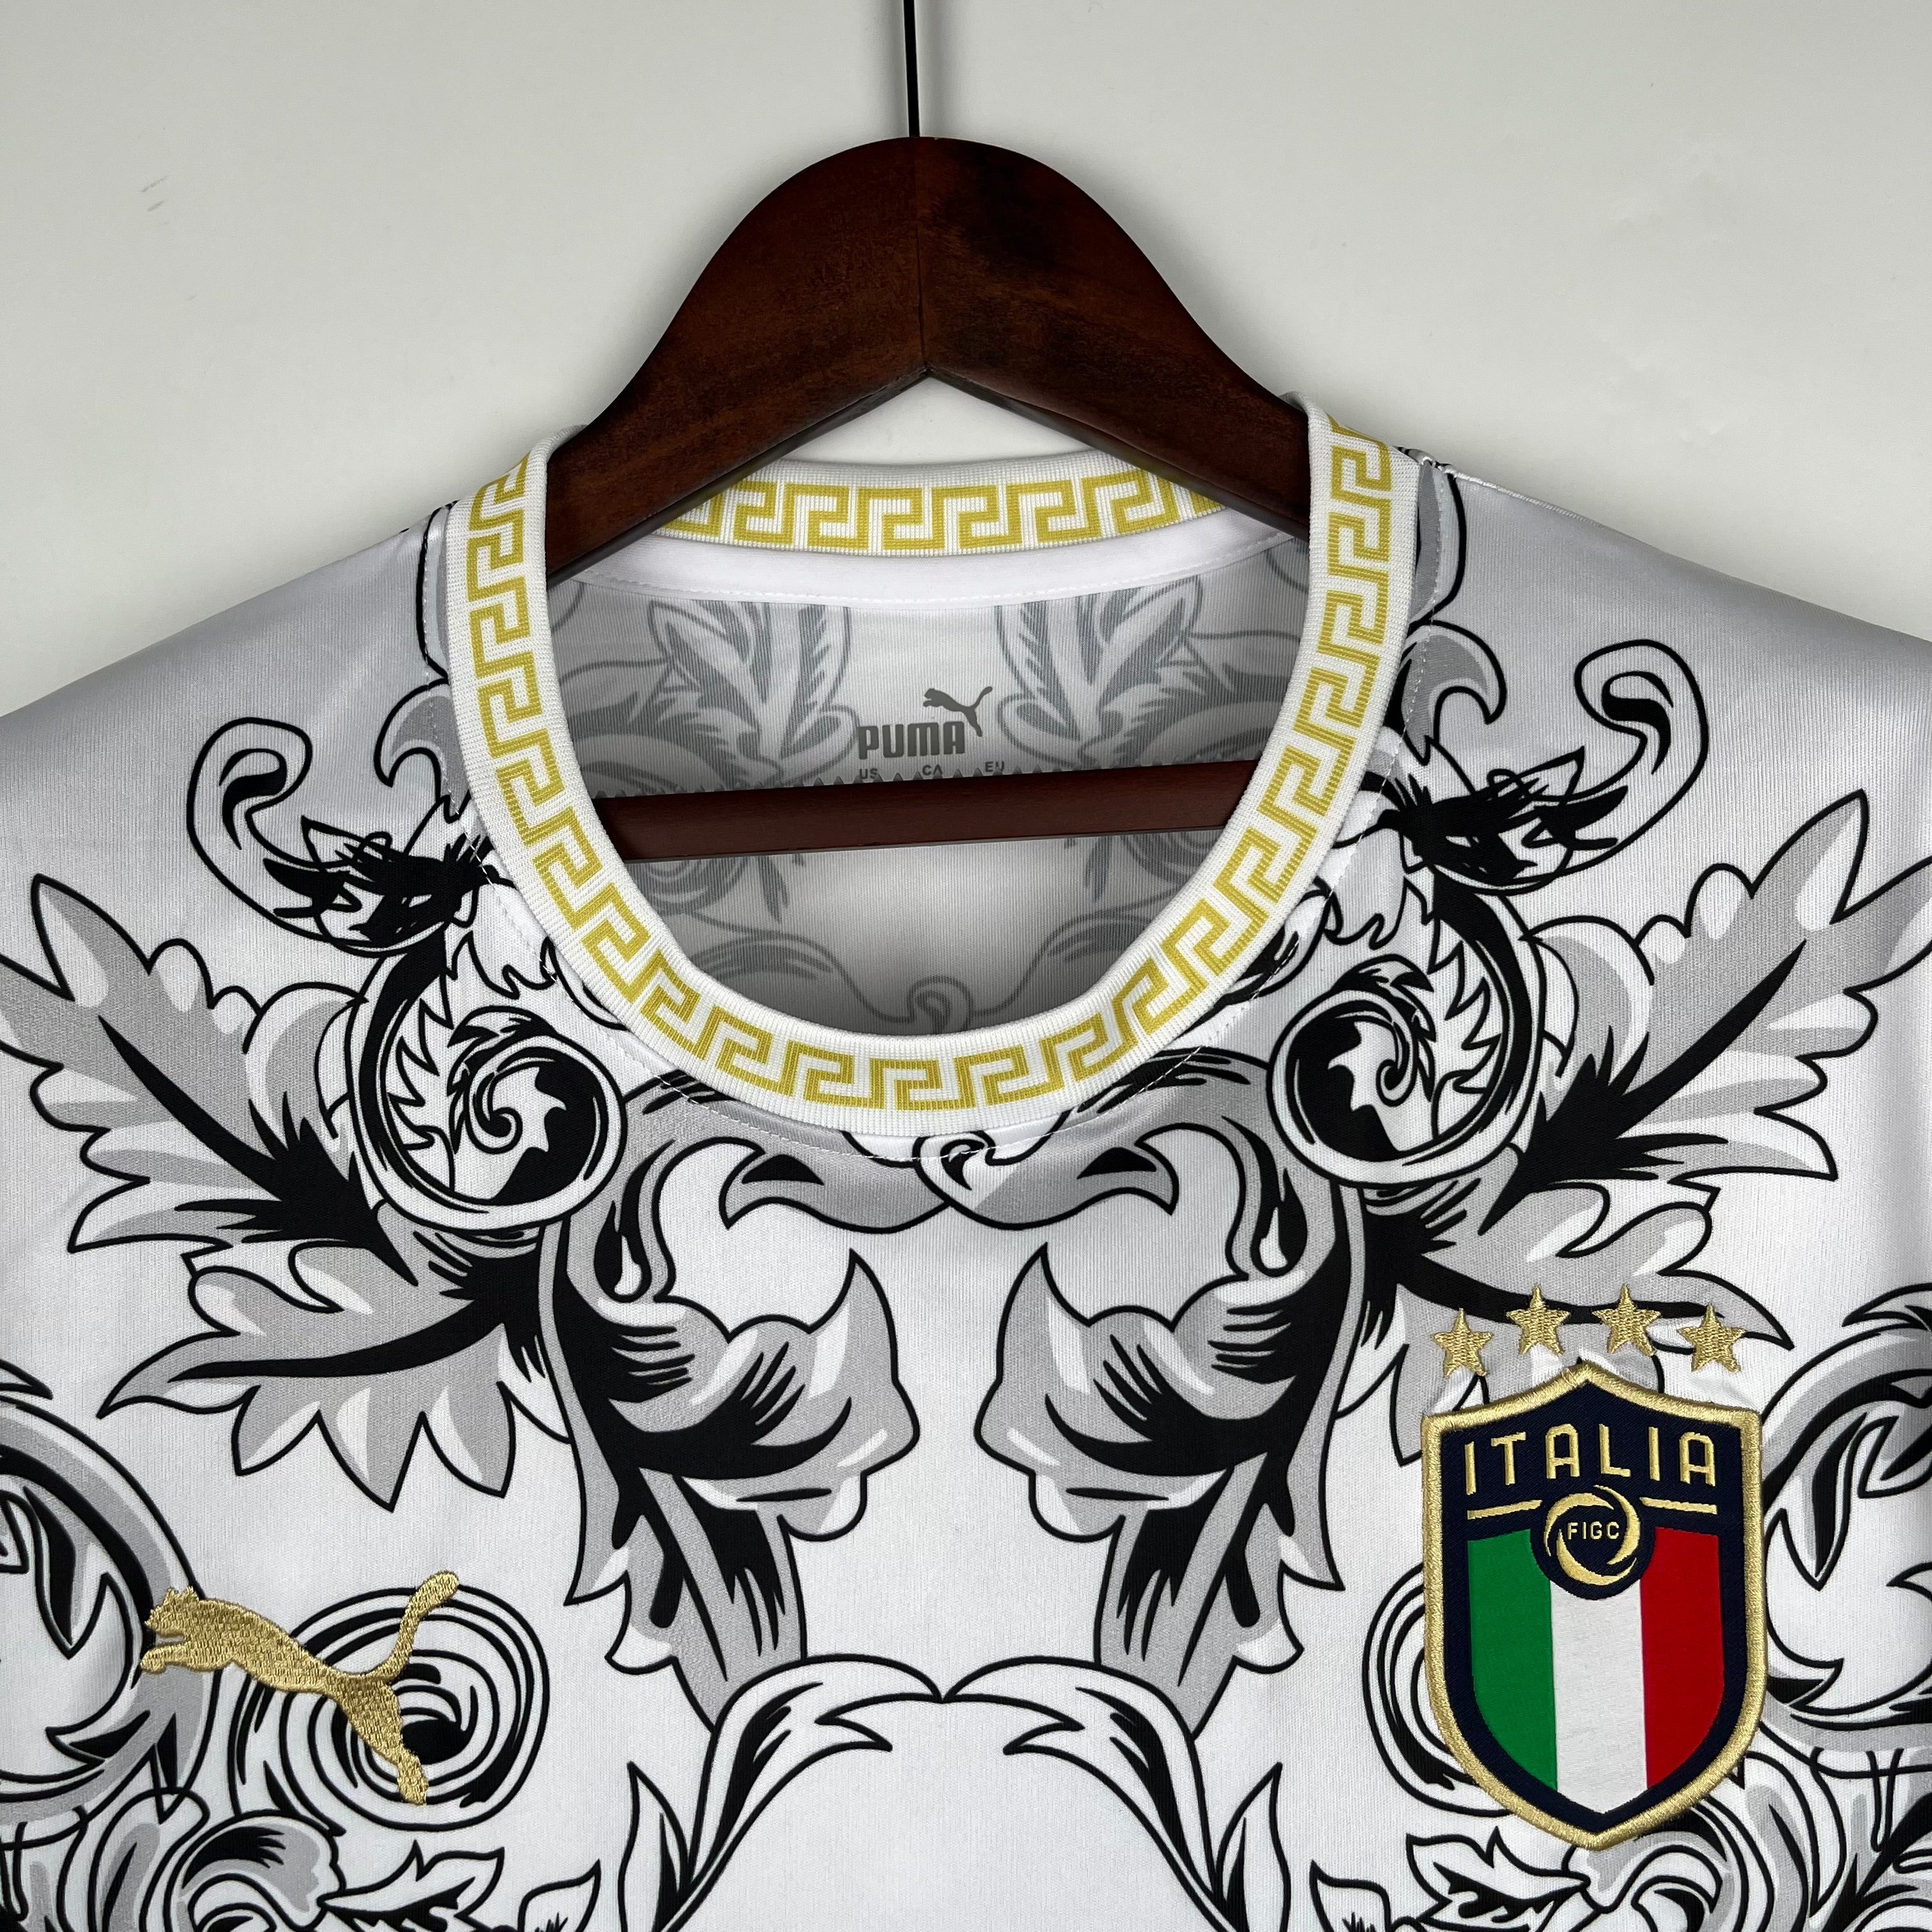 Italia Special Edition Versace - 23/24